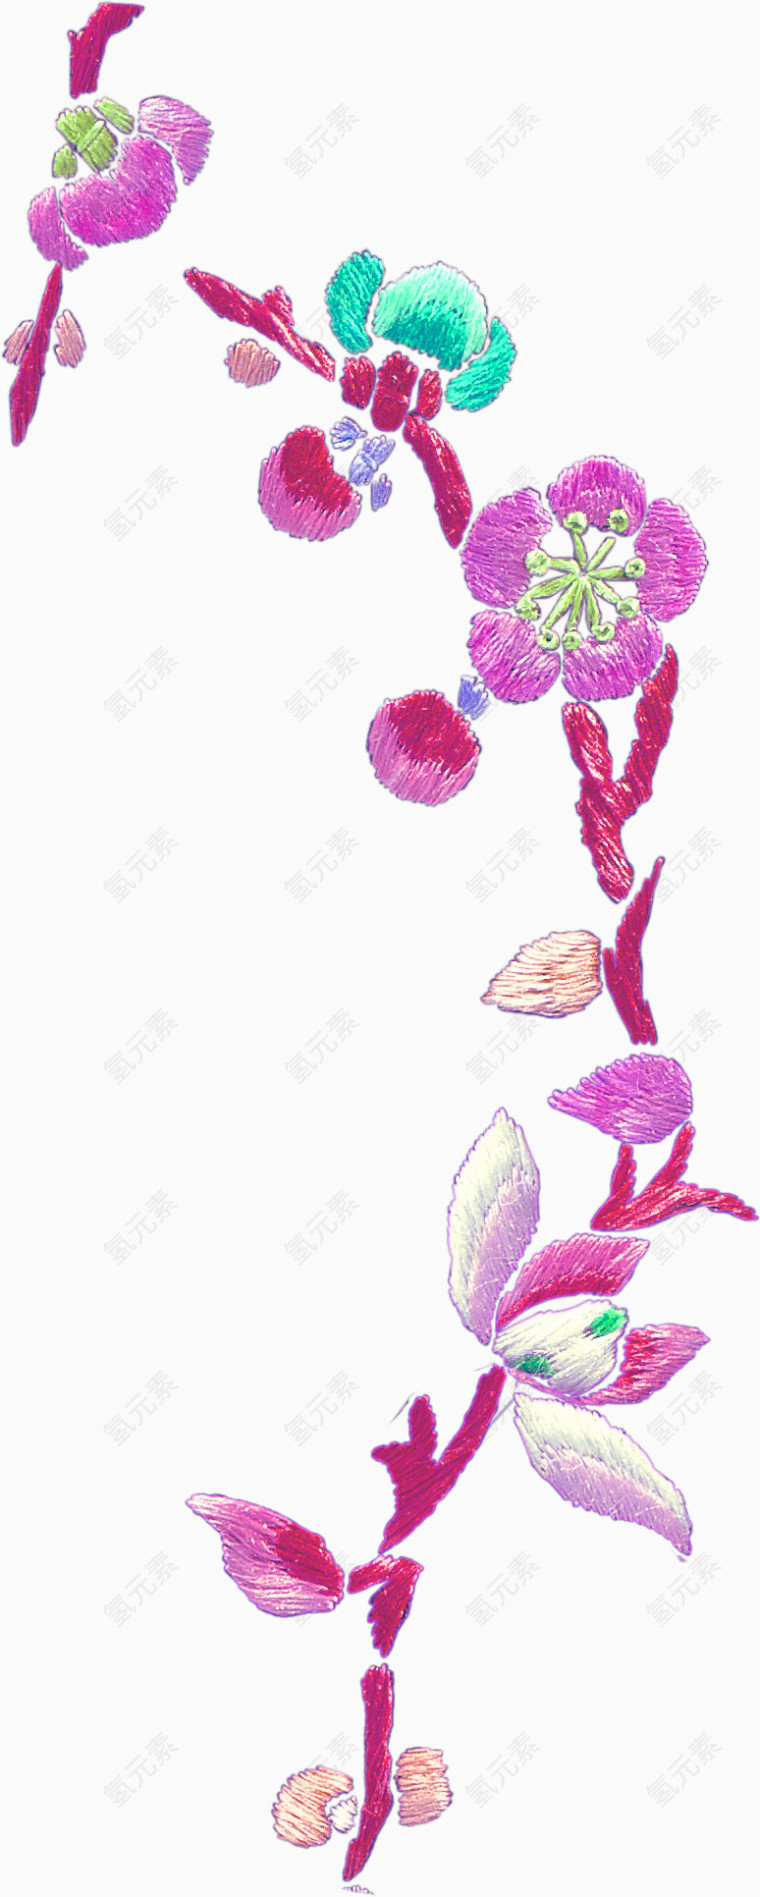 花草素材花卉图案